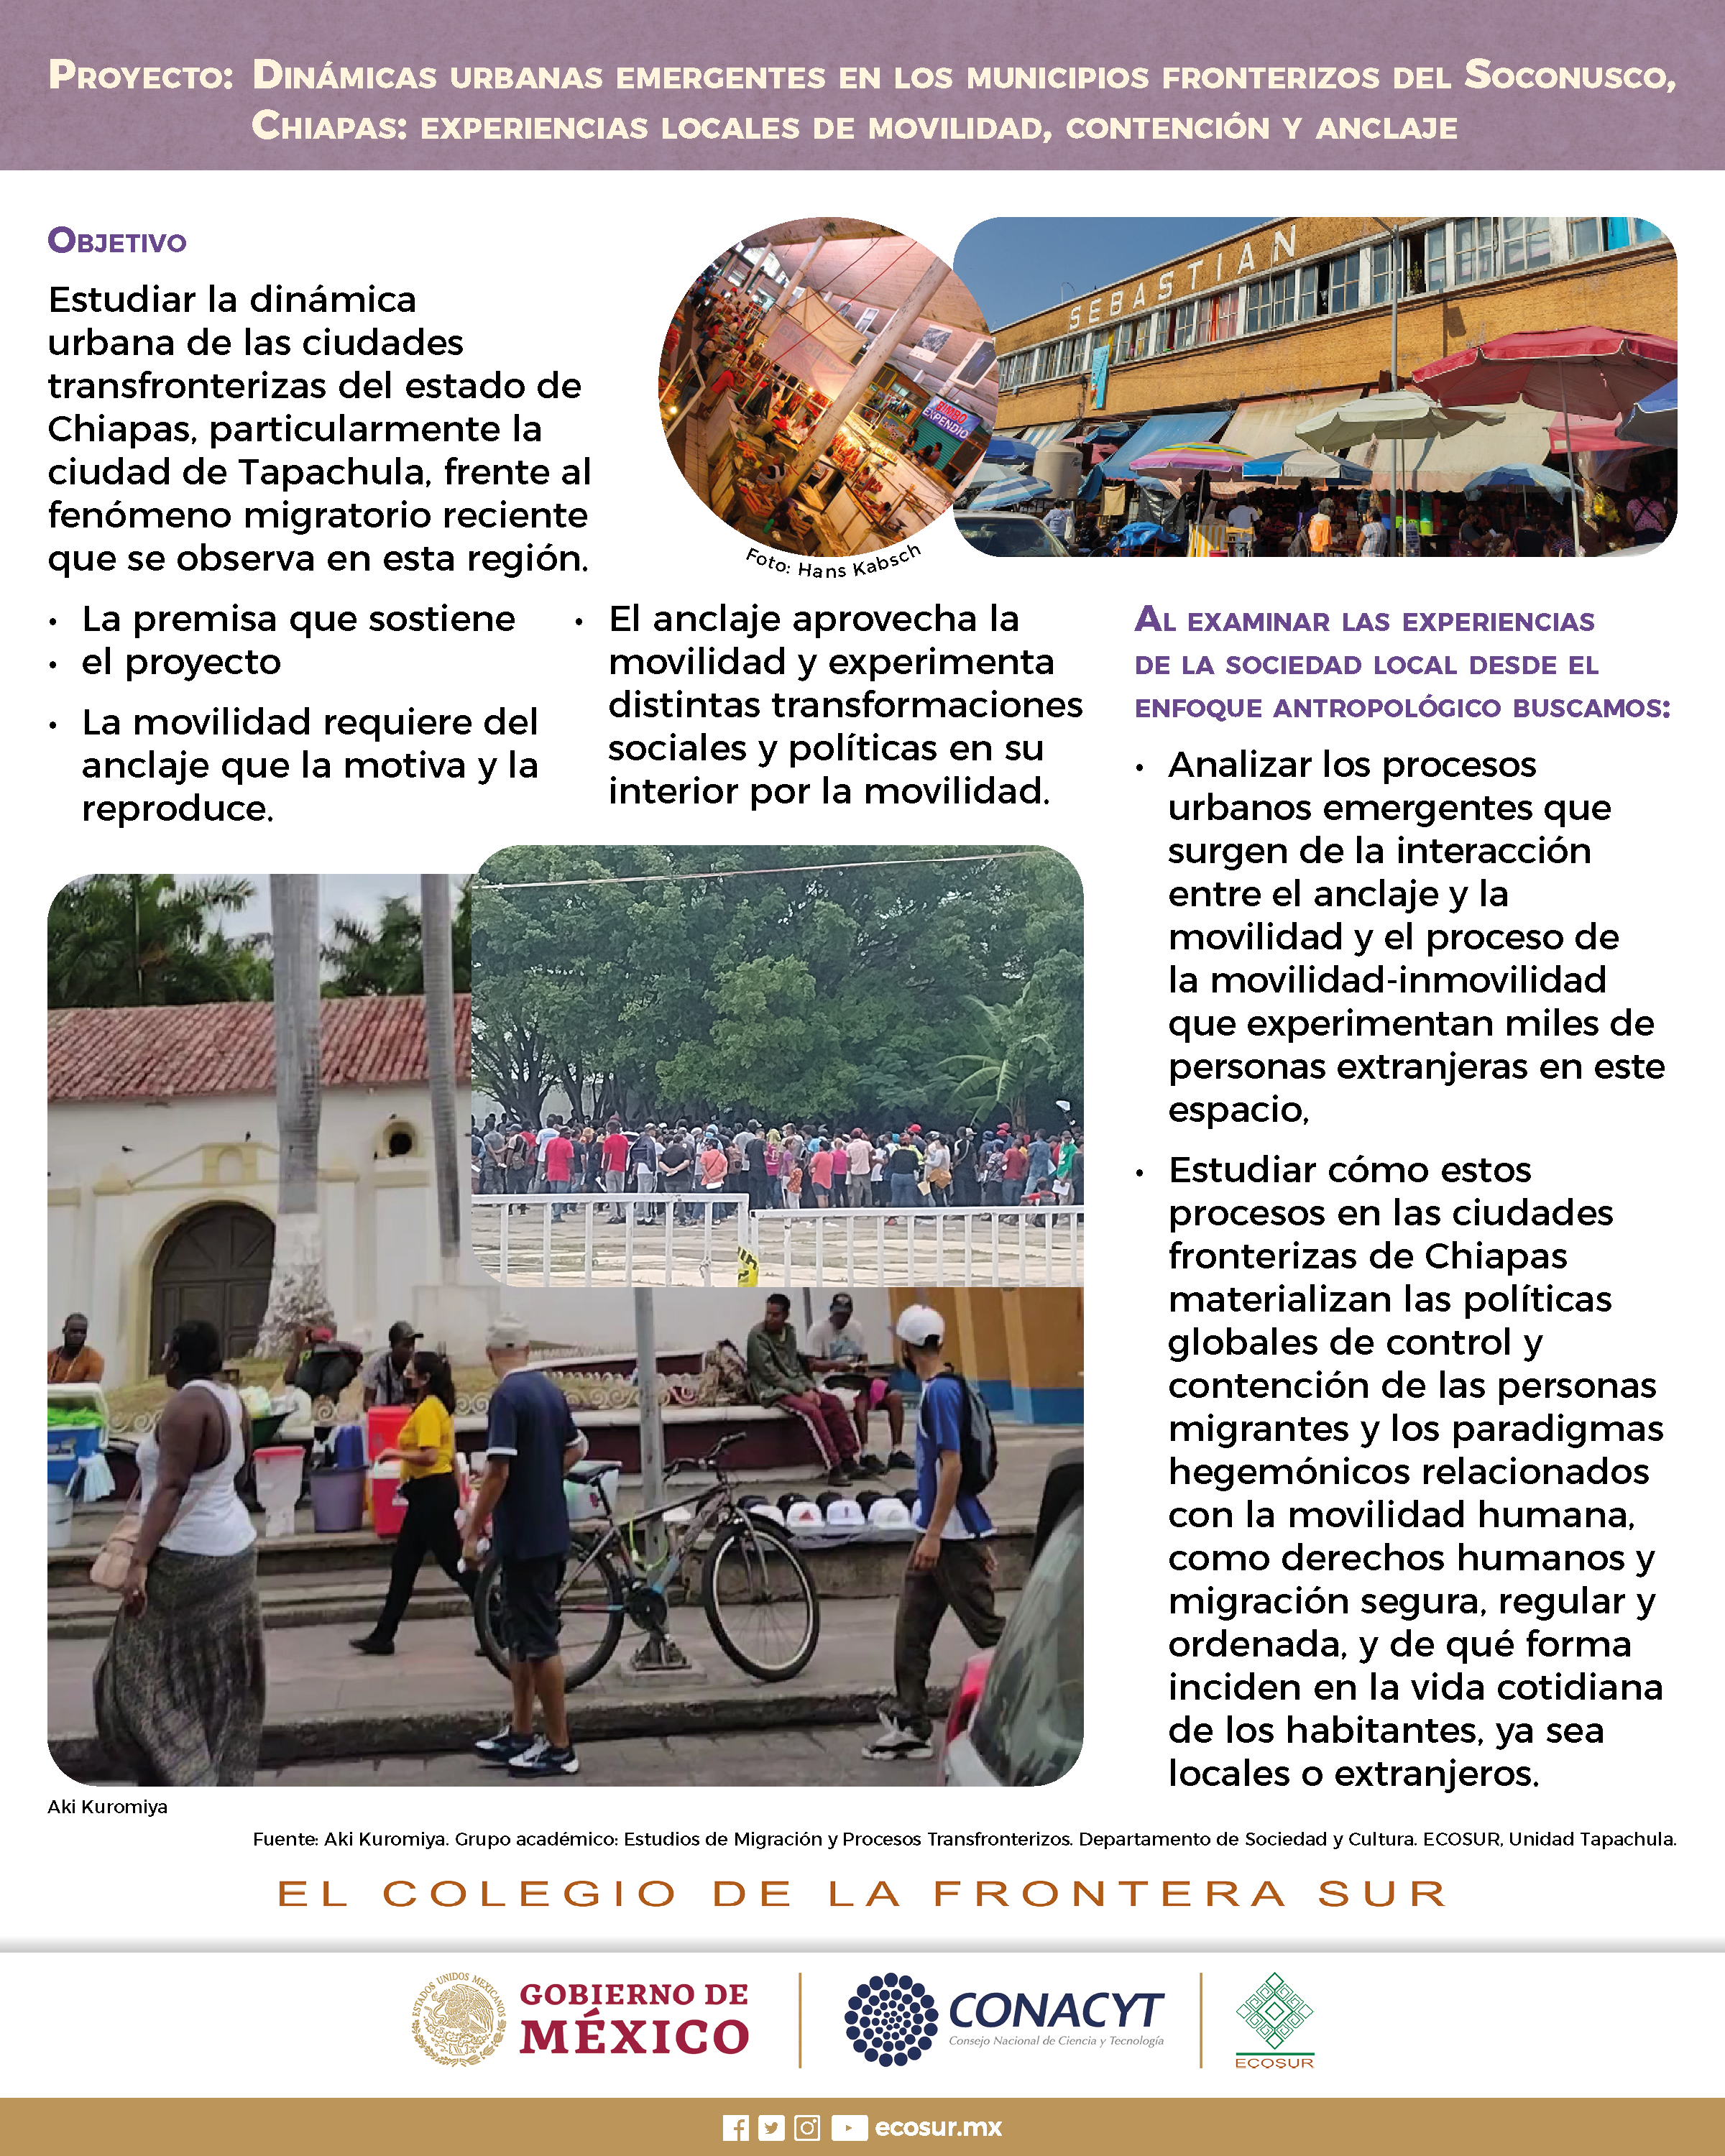 Dinámicas urbanas emergentes en los municipios fronterizos del soconusco, Chiapas: Experiencias locales de movilidad, contención y anclaje